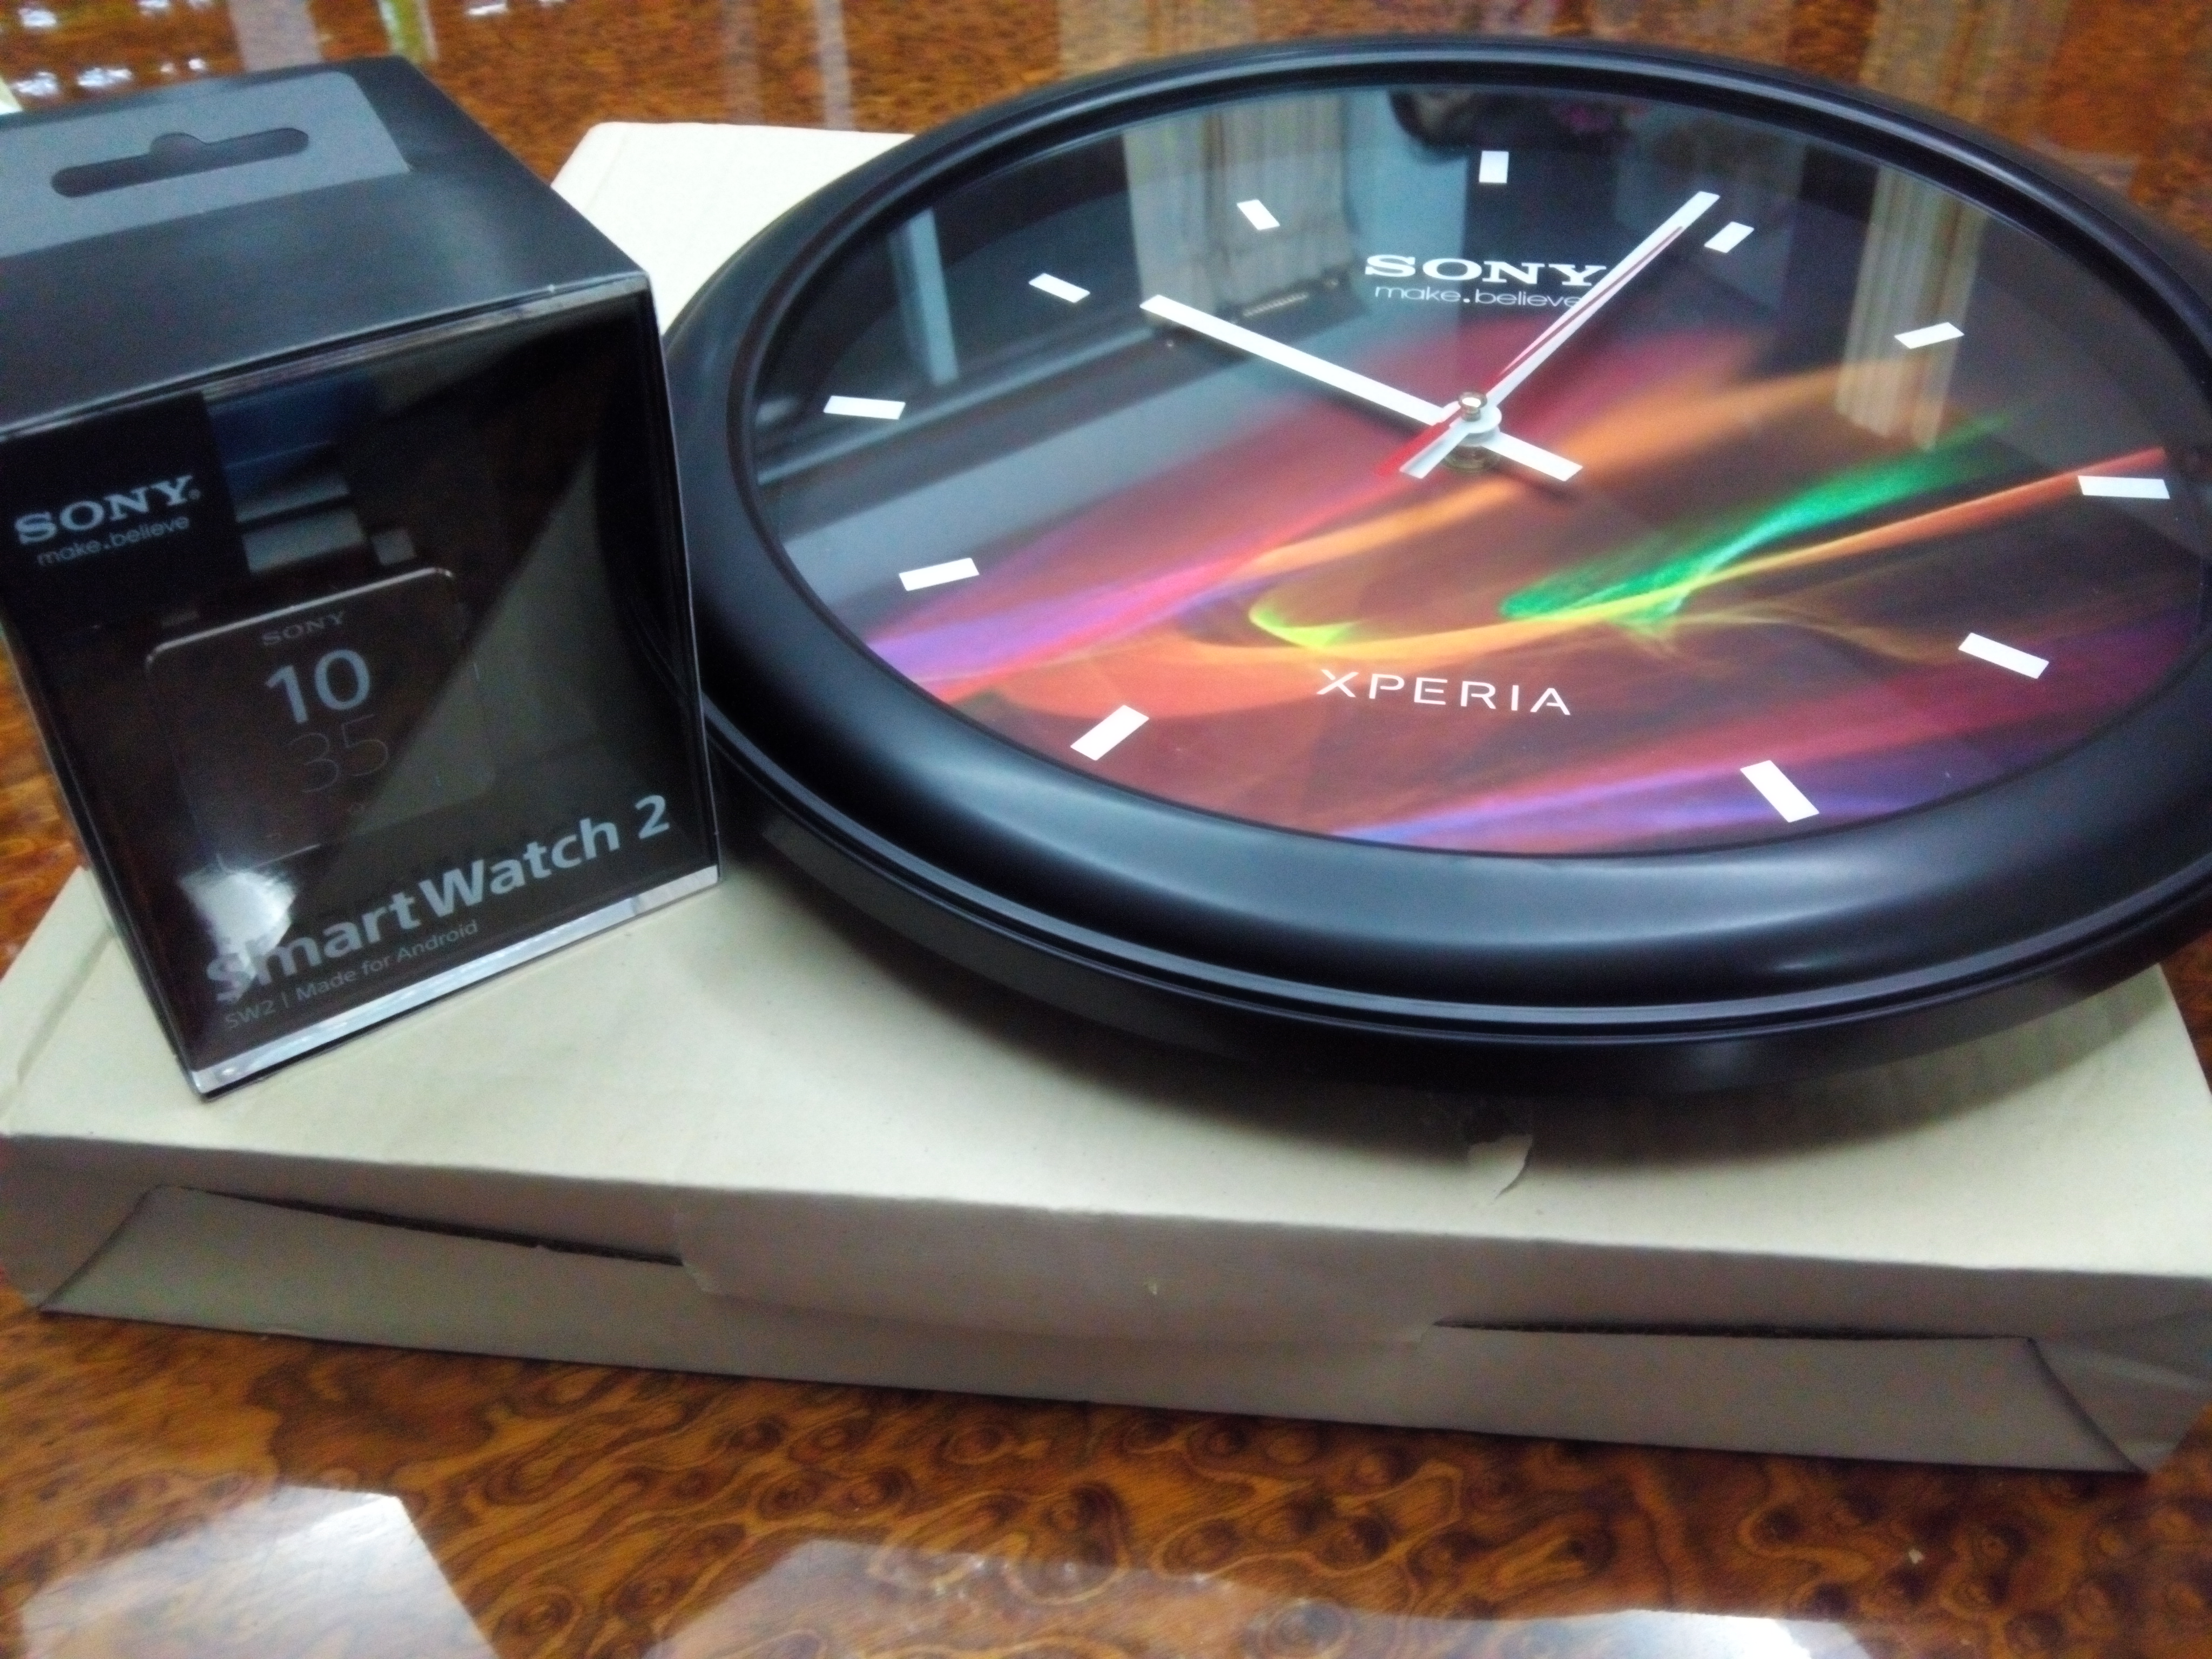 IMG 20131026 070020 | Sony Smartwatch 2 | <!--:TH--></noscript>[Unboxing + พรีวิว] แกะกล่อง Sony Smartwatch 2 และ ชมรอบตัวเครื่อง